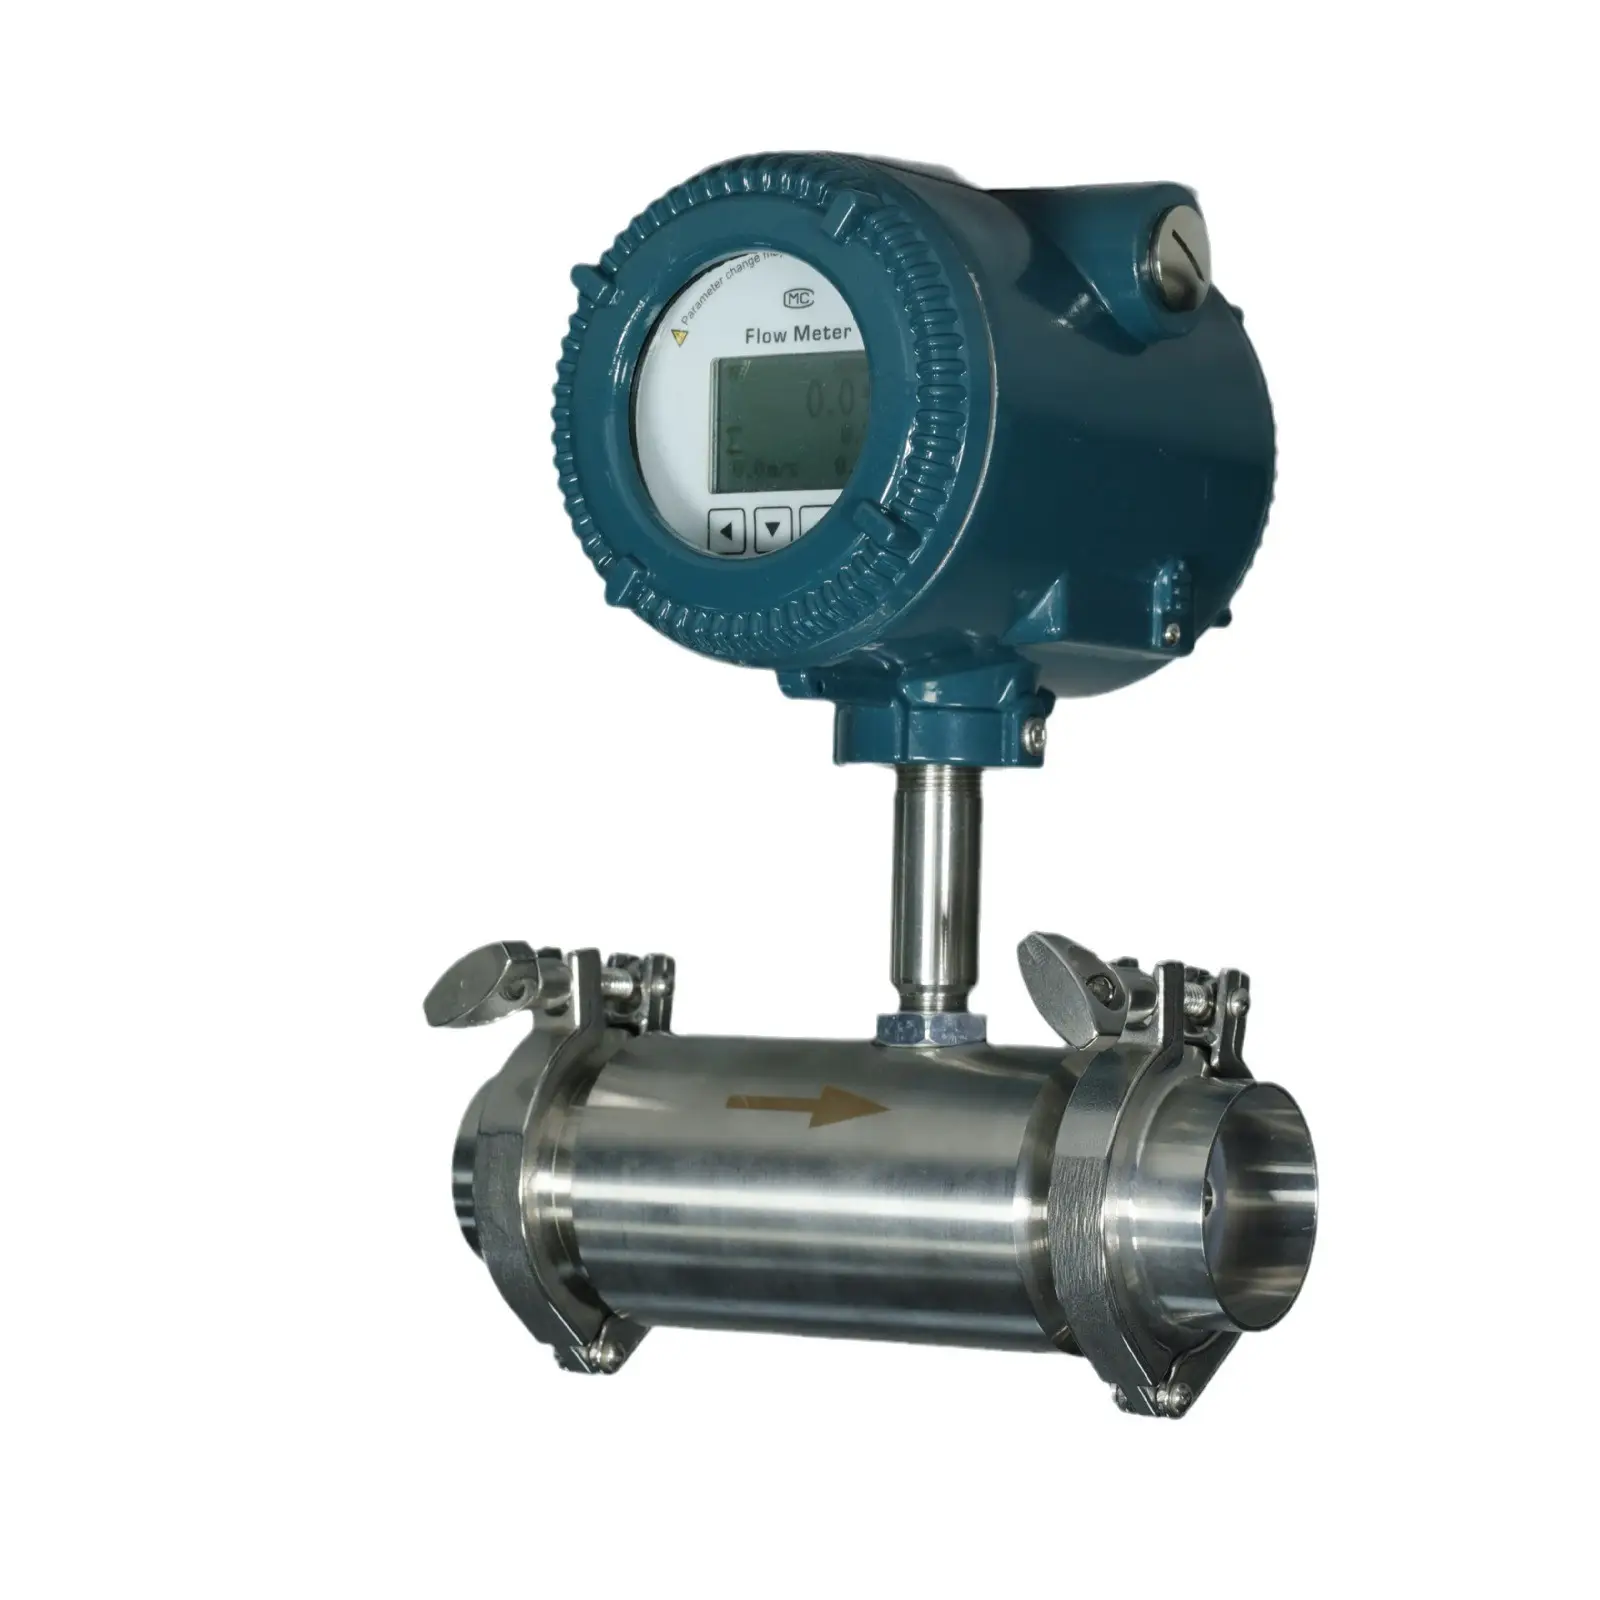 Edelstahl sanitär klemmen verbunden, um die flüssigkeit turbine flow meter 24VDC externe netzteil mit RS485